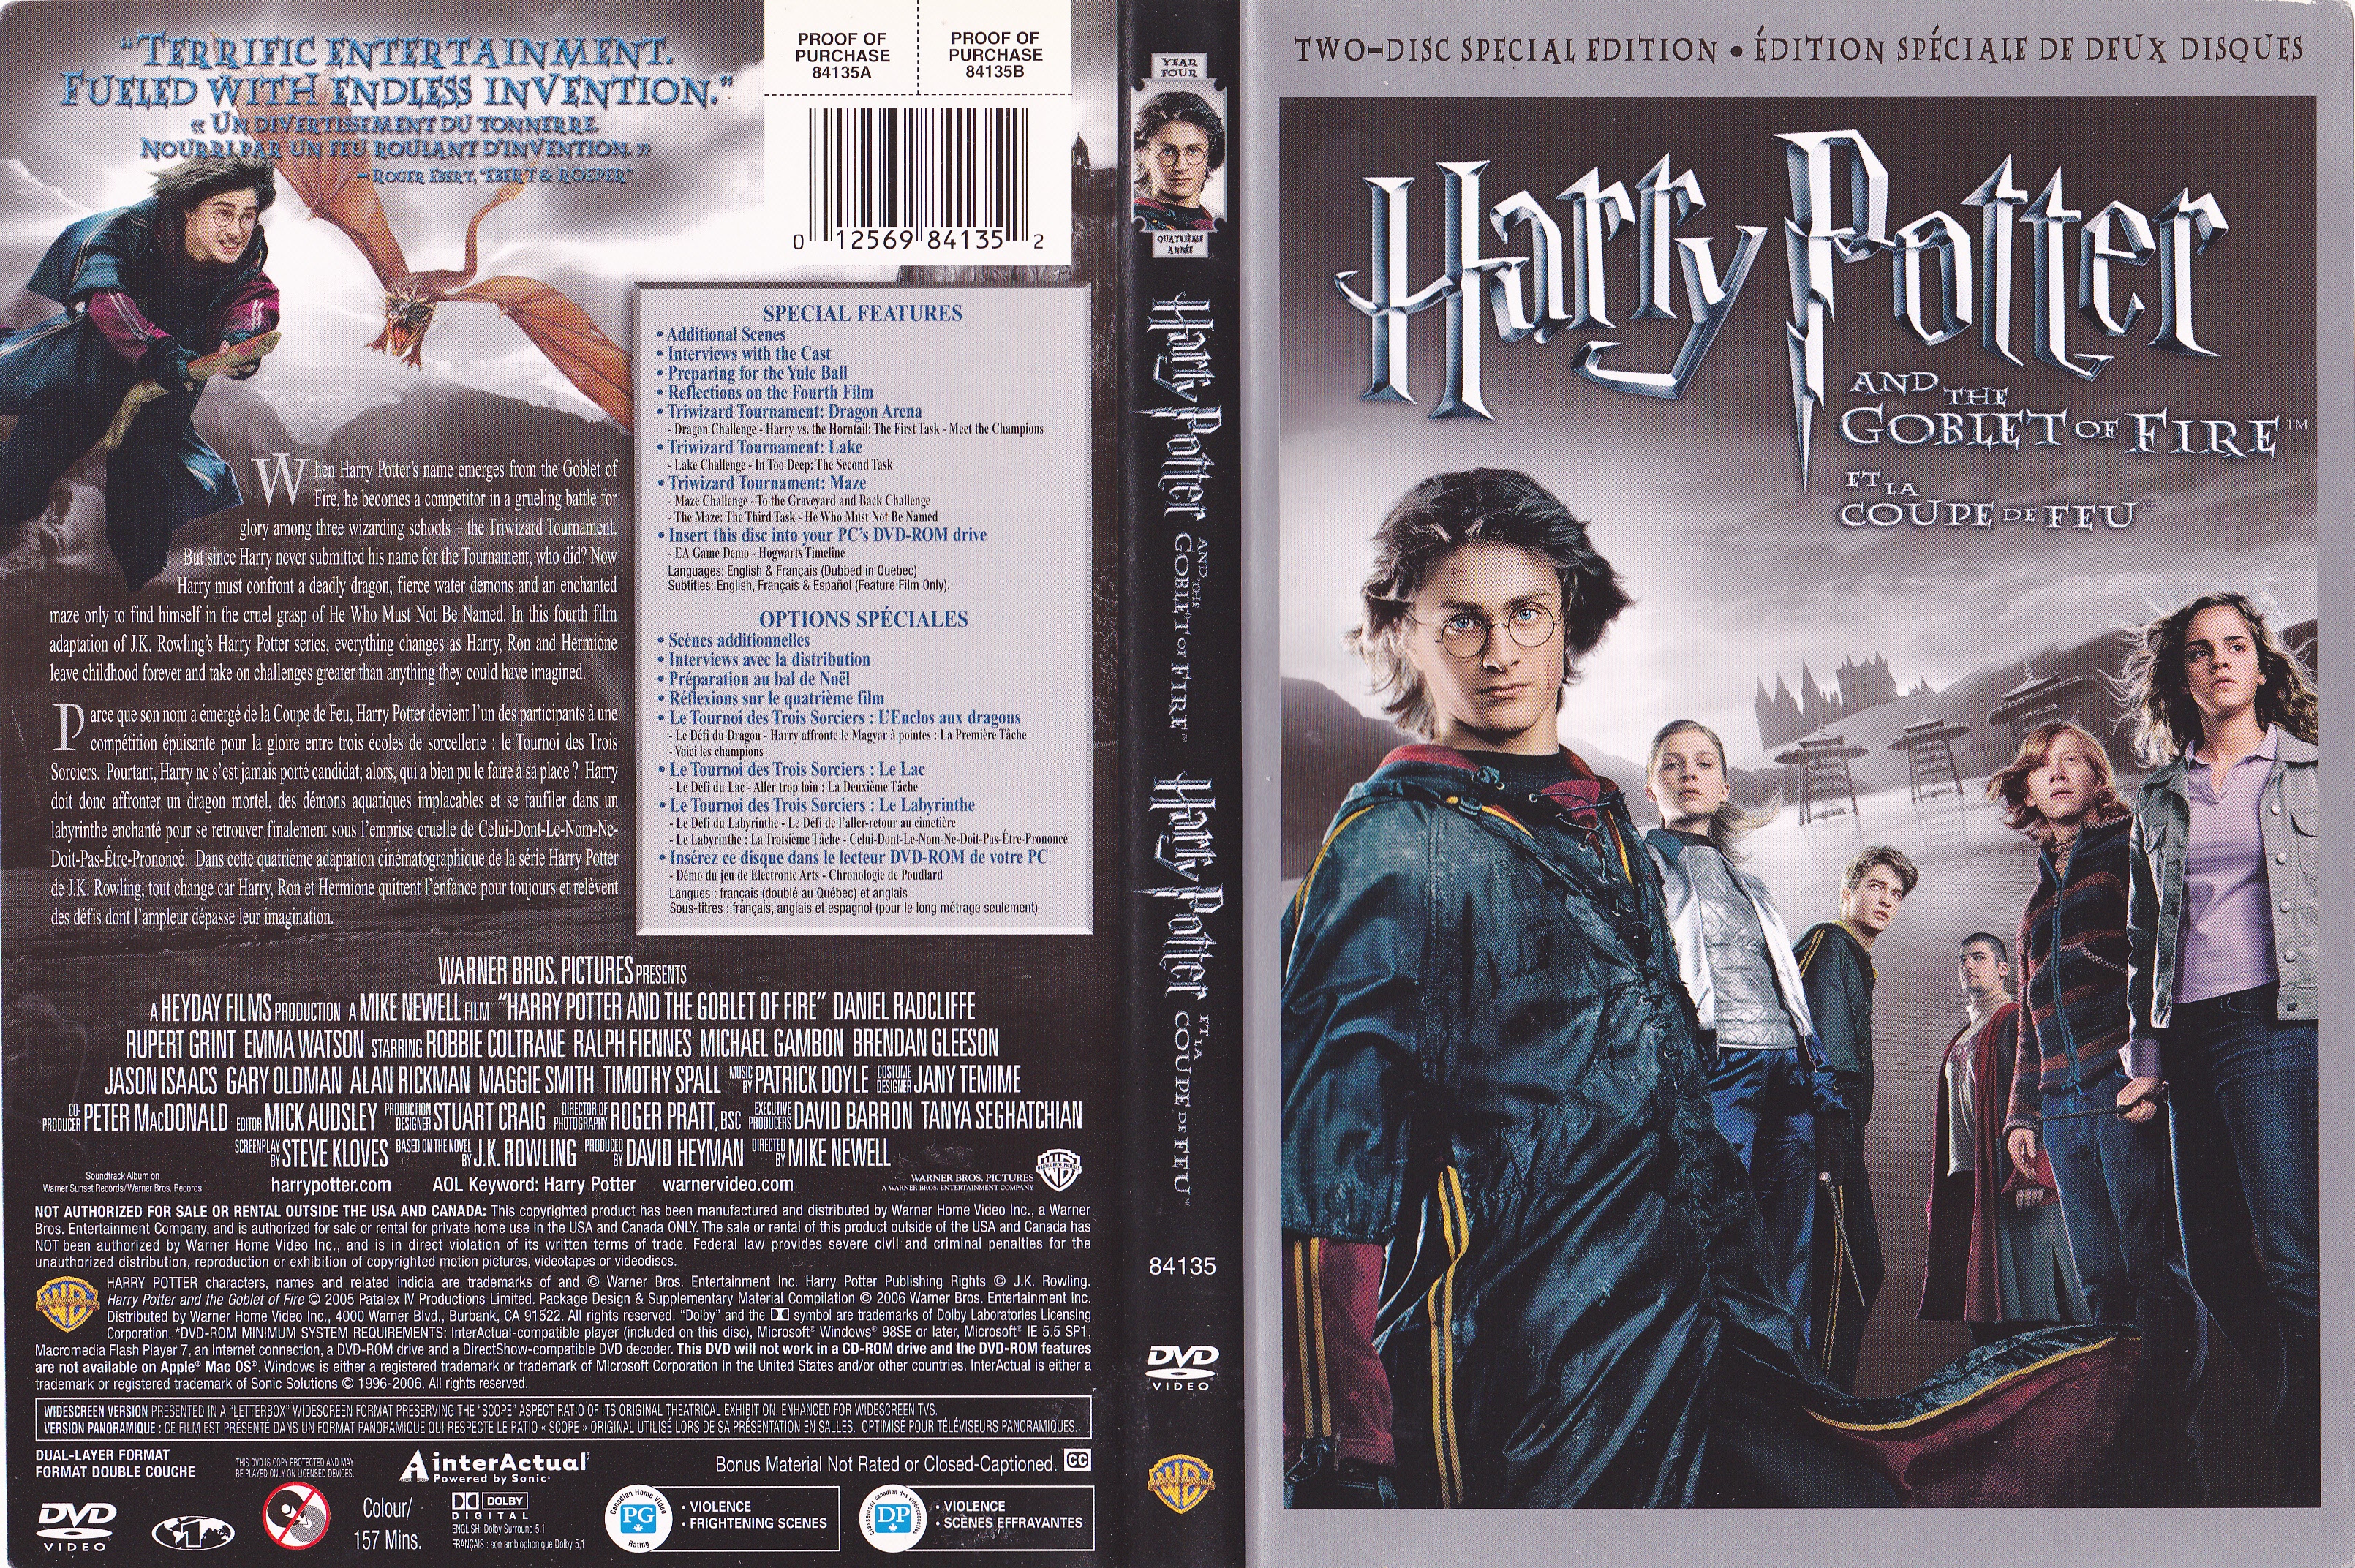 Jaquette DVD Harry potter And the goblet of fire - Harry Potter et la coupe de feu (Canadienne)